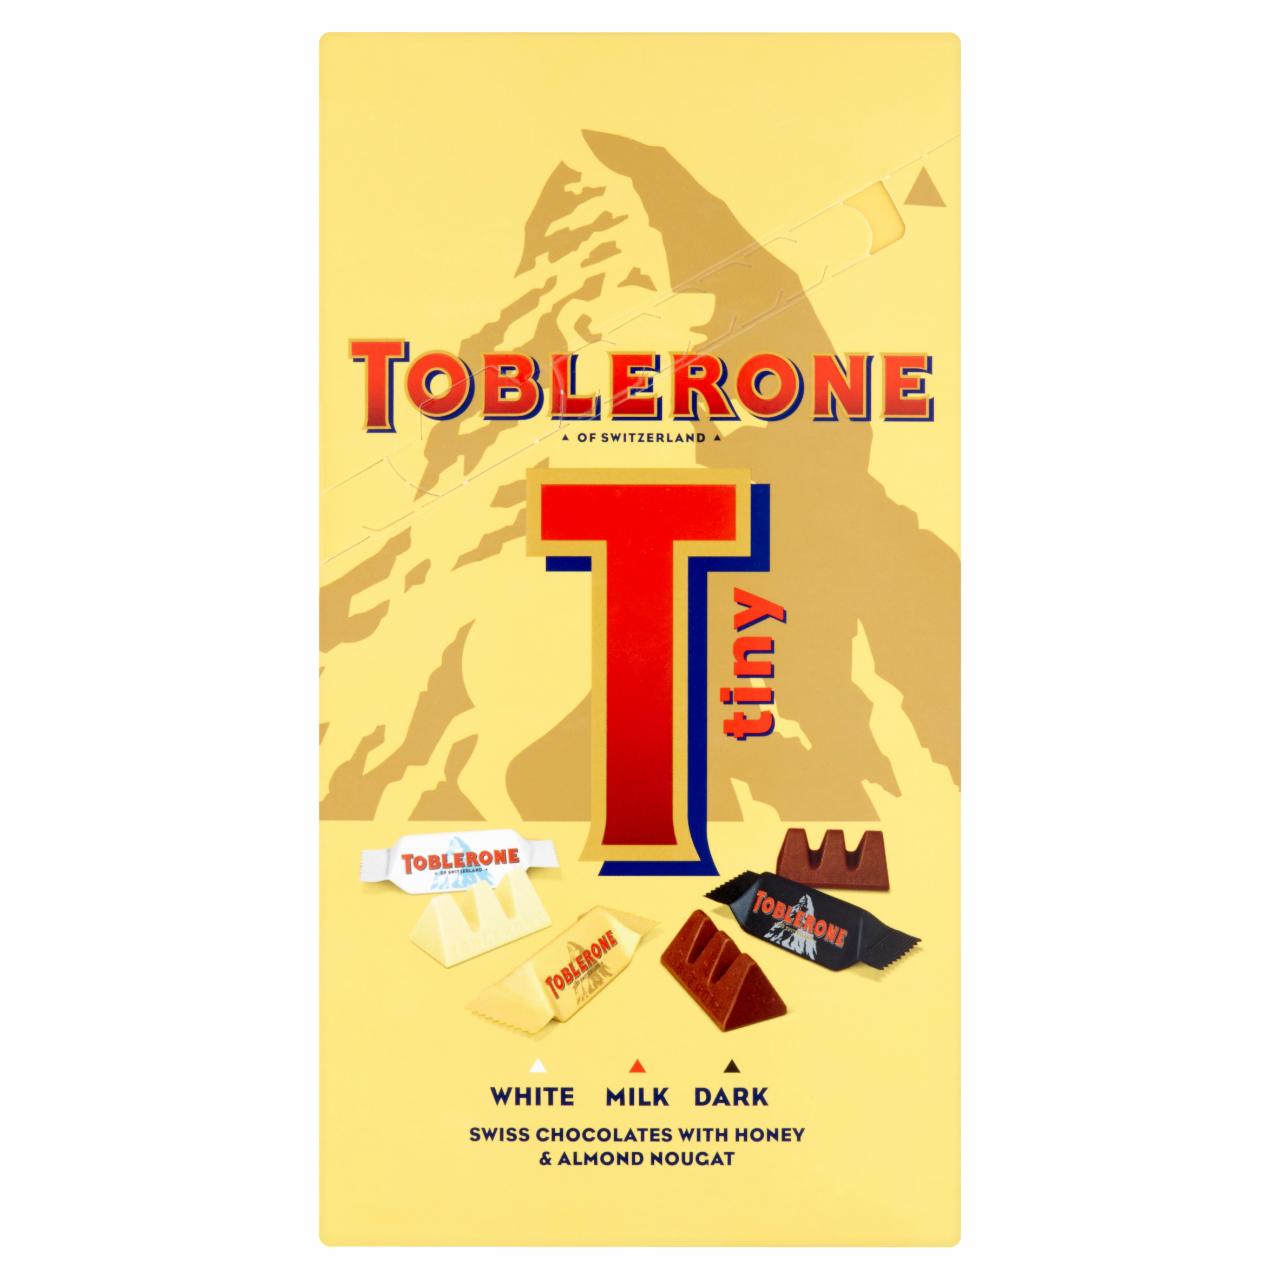 Képek - Toblerone svájci csokoládé válogatás tej- & étcsokoládéval & mézes, mandulás fehércsokoládéval 200 g